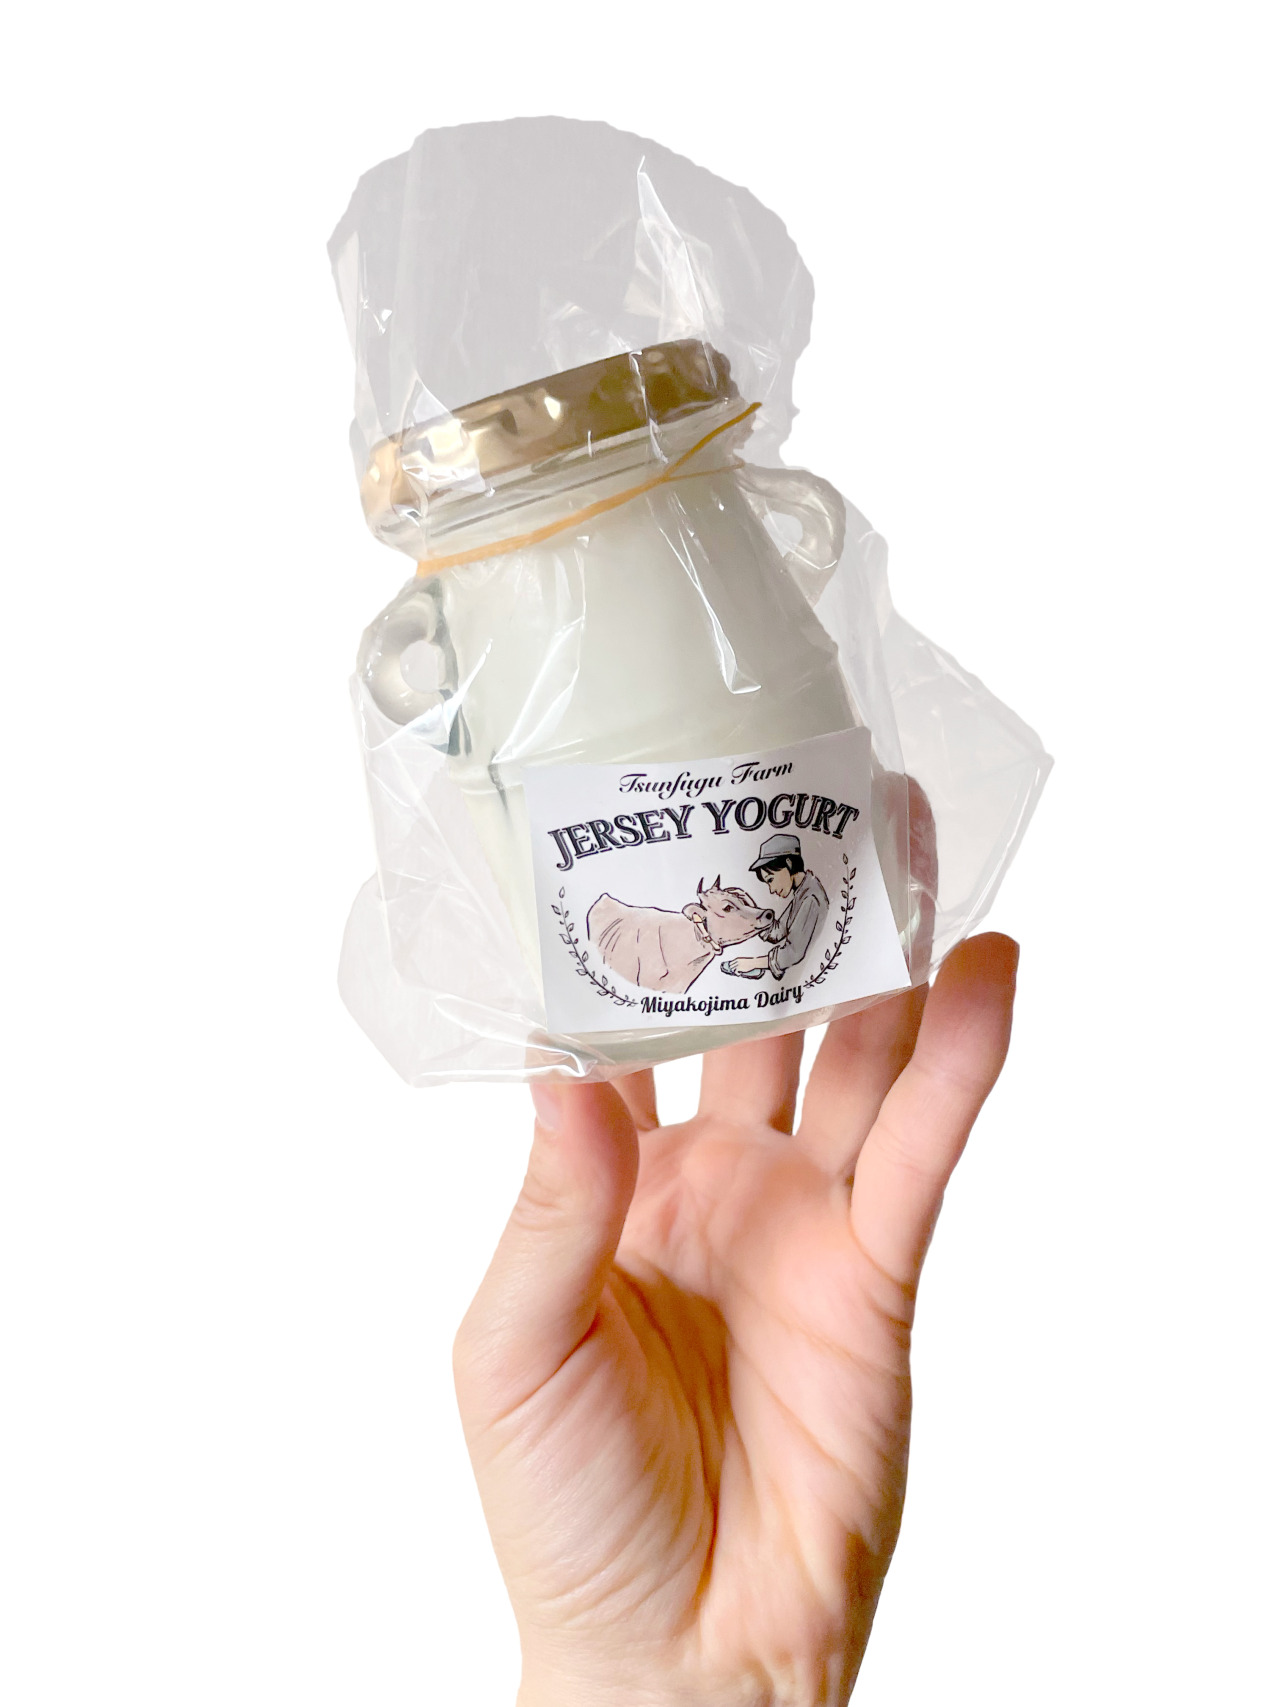 ツンフグ牧場のジャージーミルクヨーグルト グラスフェッドミルク使用 加糖タイプ